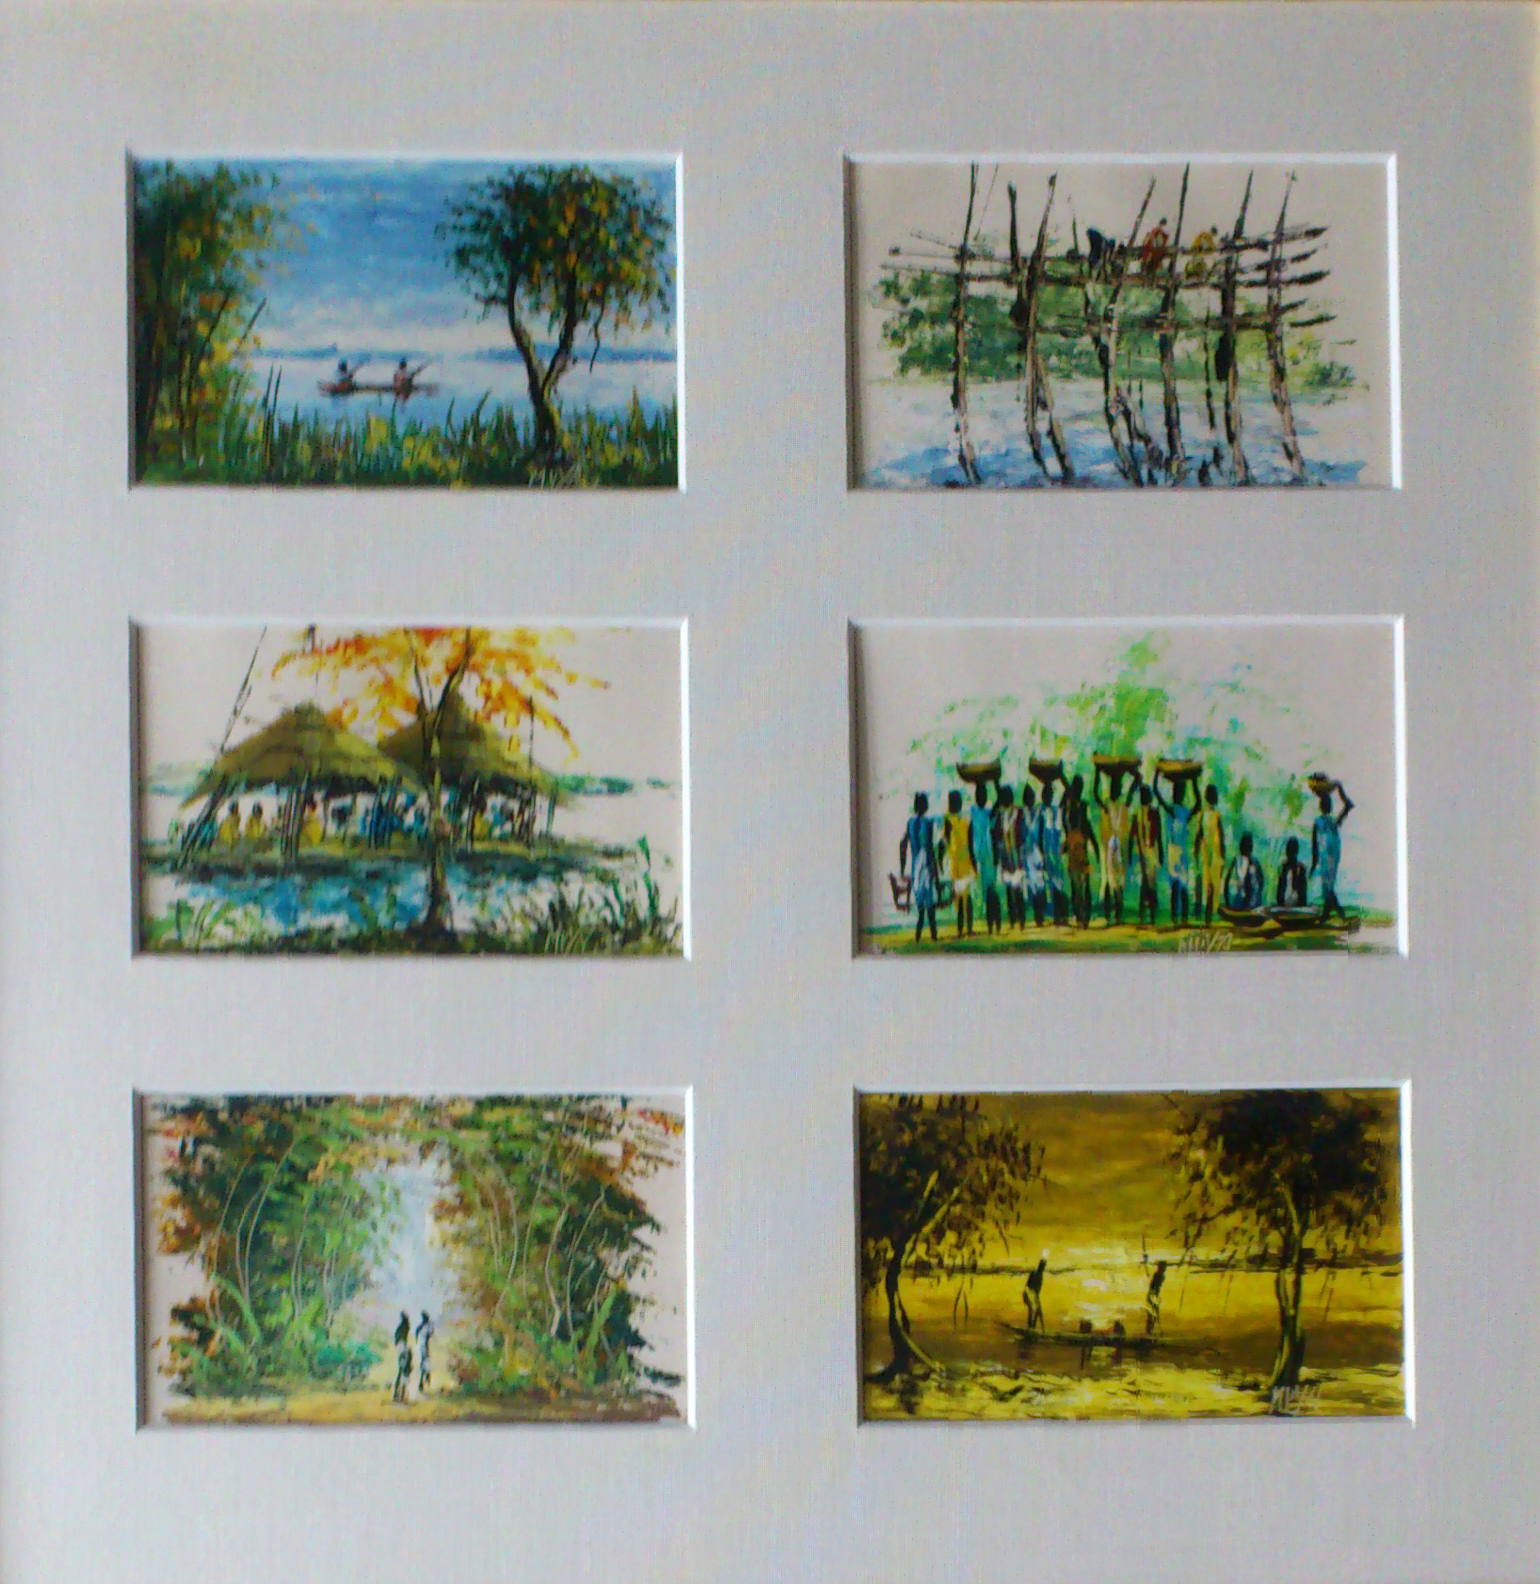 Mpya = work is joy (Suaheli): Kisangani am Congo - 6 Landschaften zu je 12x7,5 cm Öl